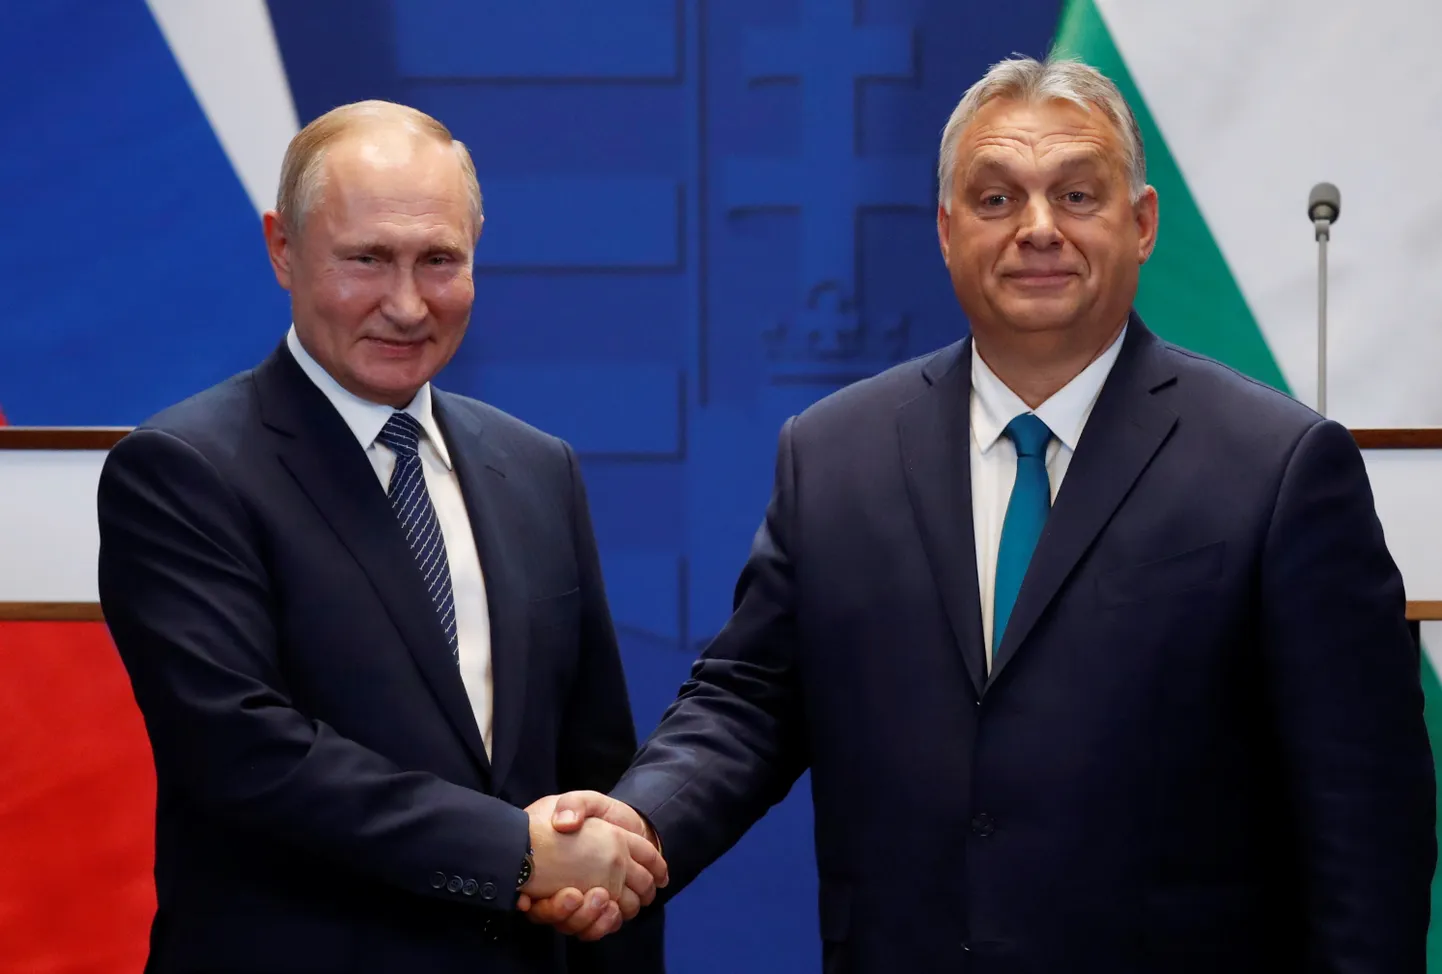 Встреча Виктора Орбана и Владимира Путина в Будапеште. 30 октября 2019 года.